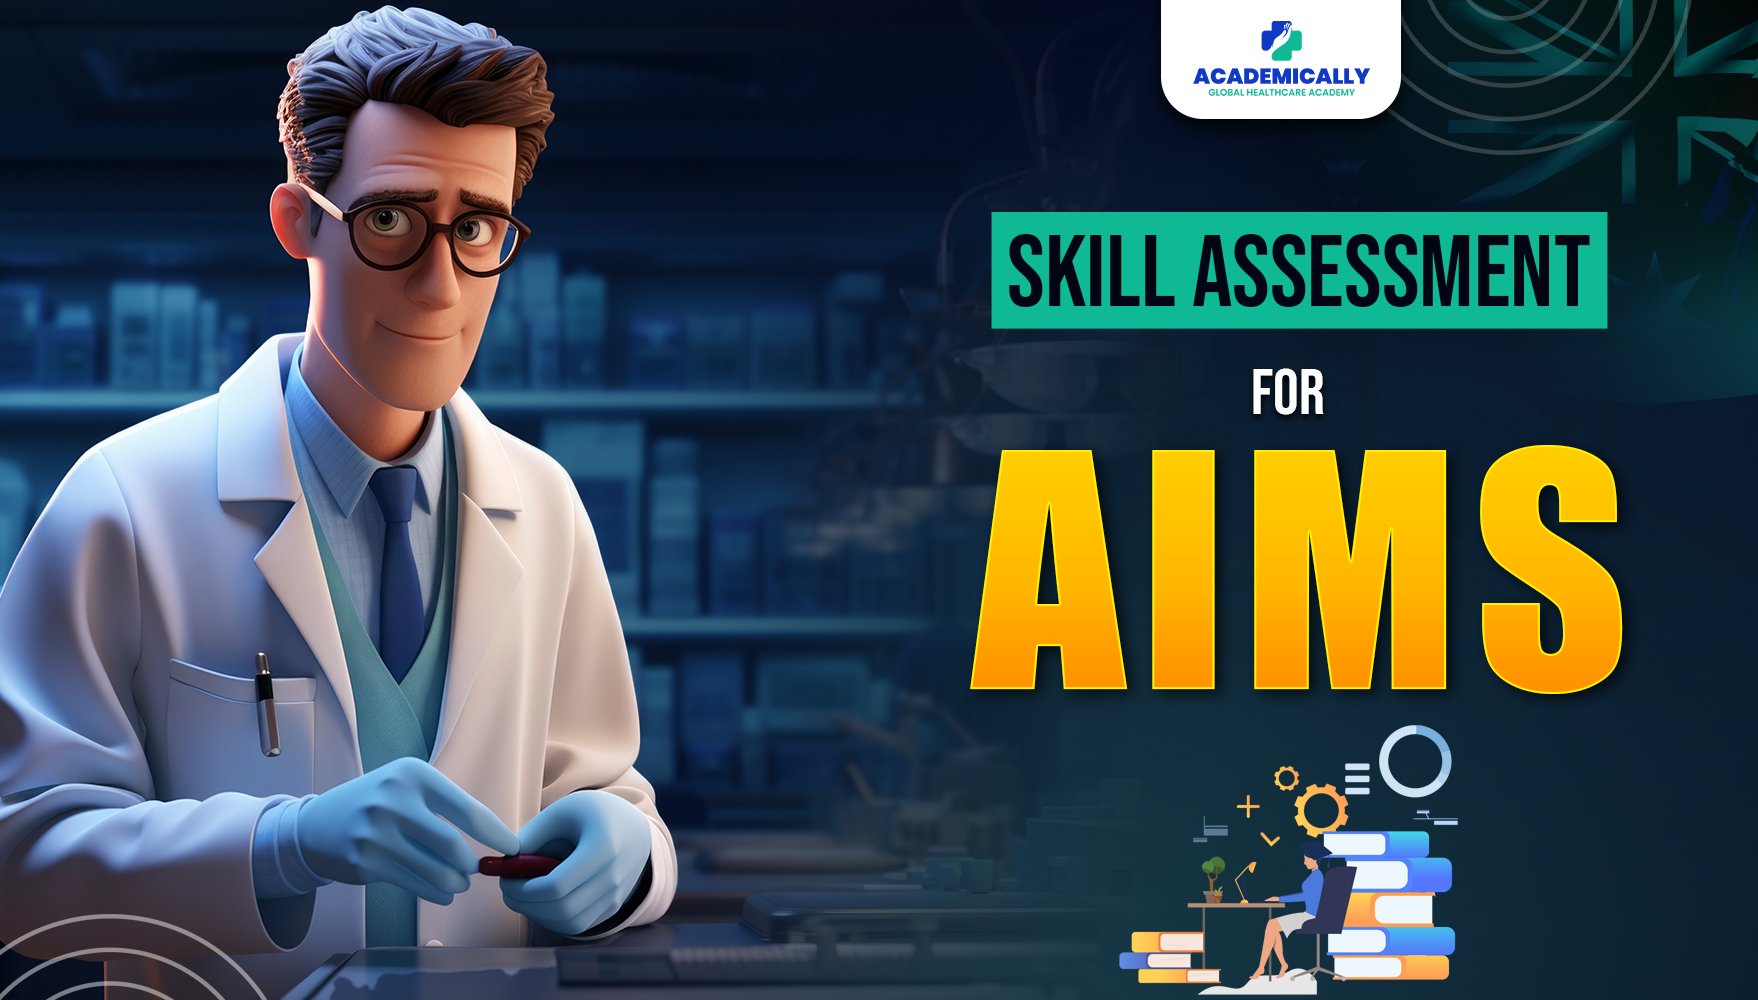 Skills Assessment for AIMS